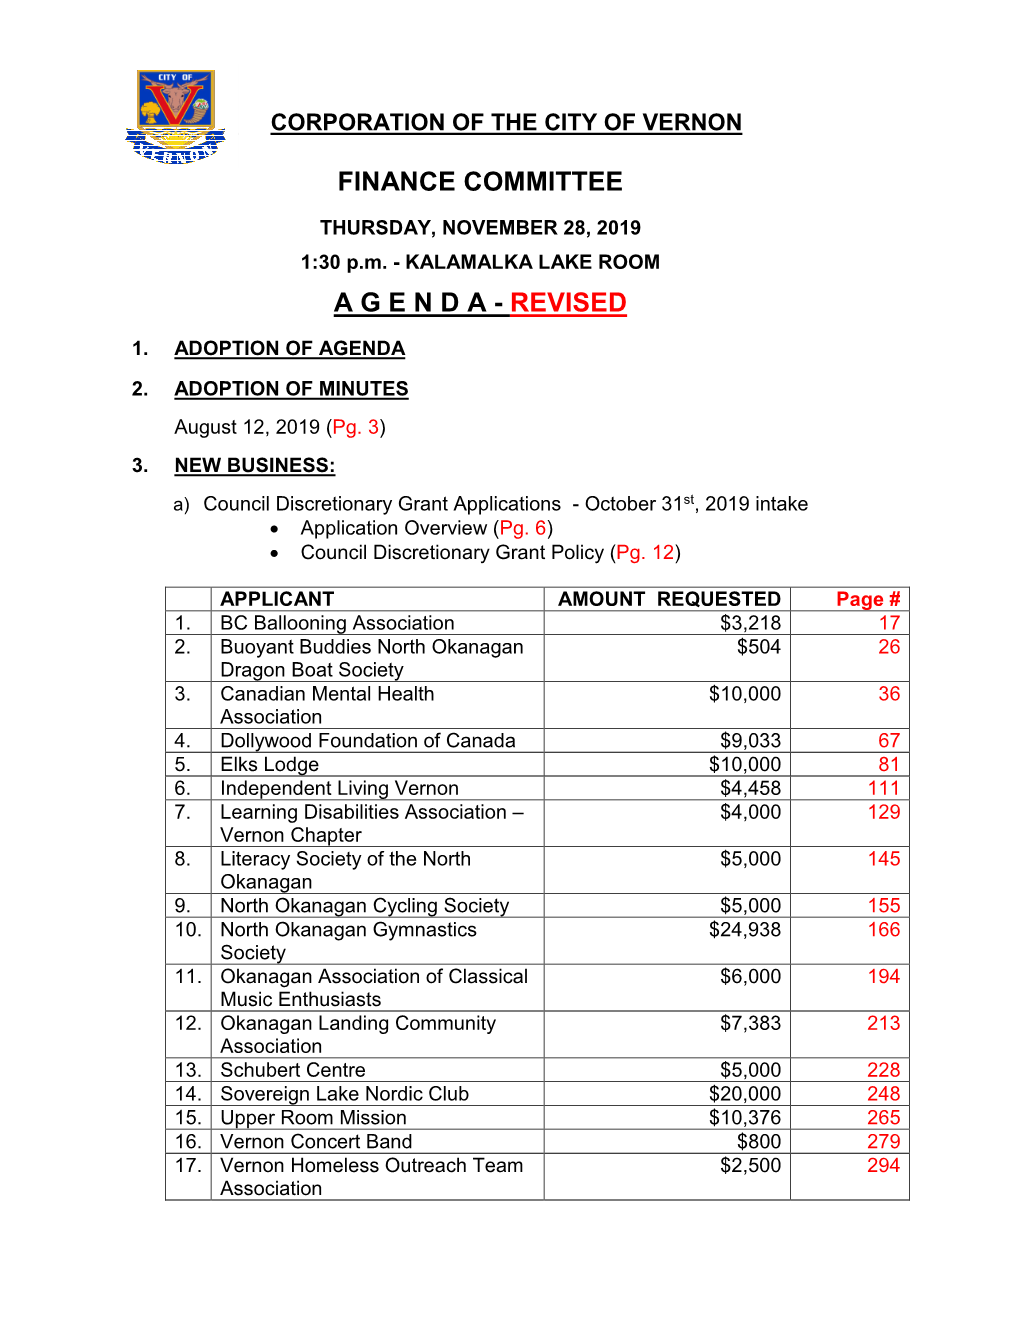 Finance Committee a G E N